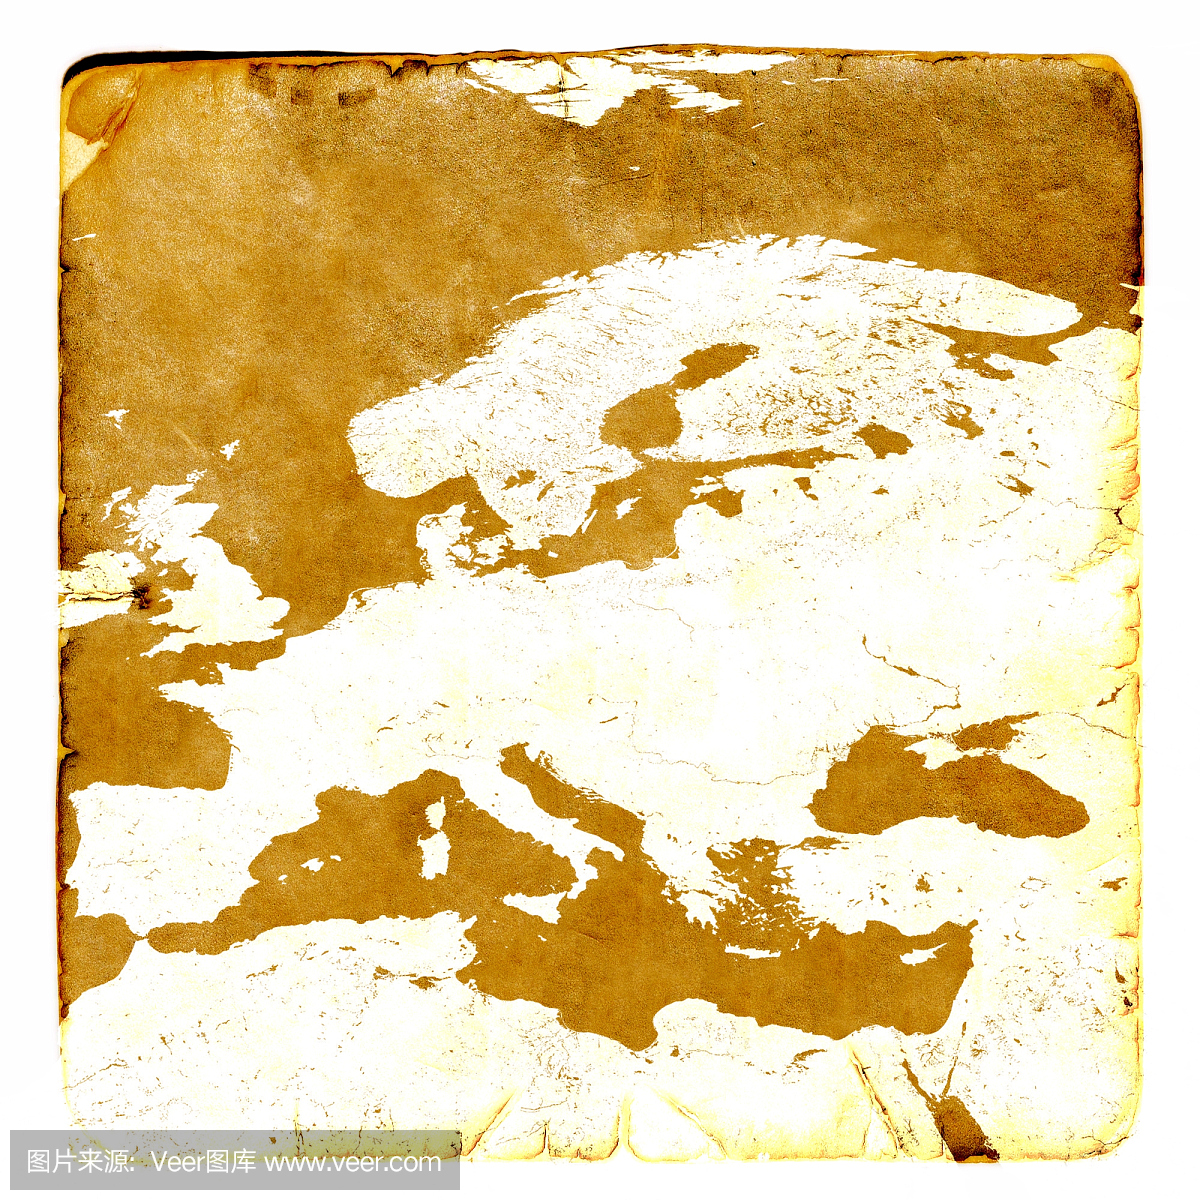 欧洲地图以旧样式空白。棕色图形在古老和损坏